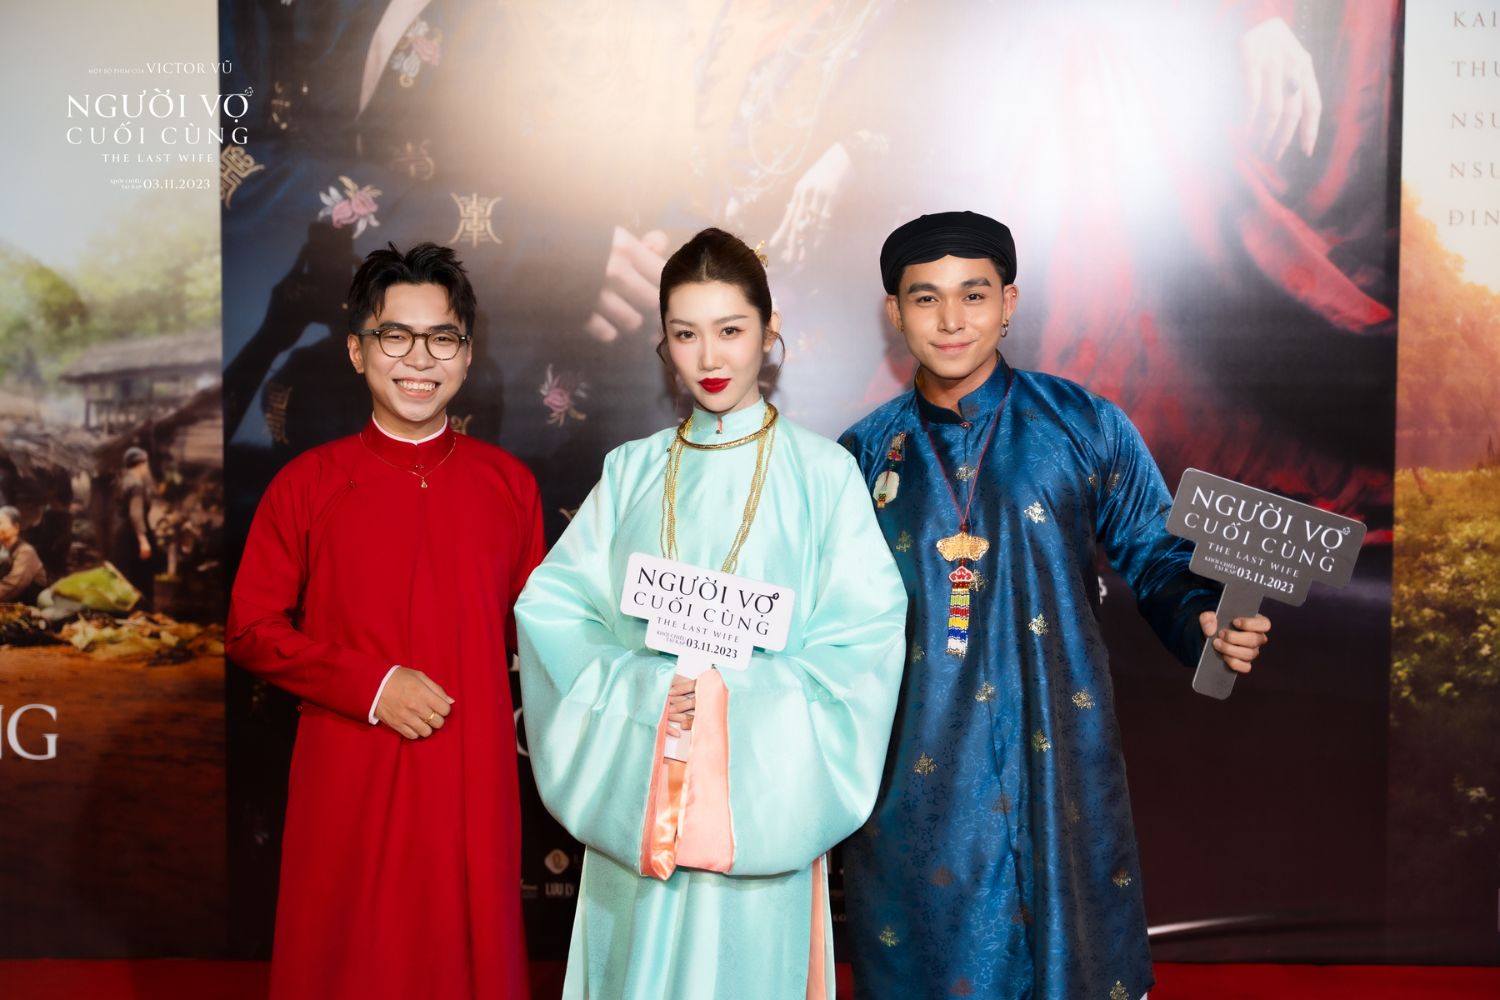 Sao Việt đổ bộ thảm đỏ buổi công chiếu Người Vợ Cuối Cùng